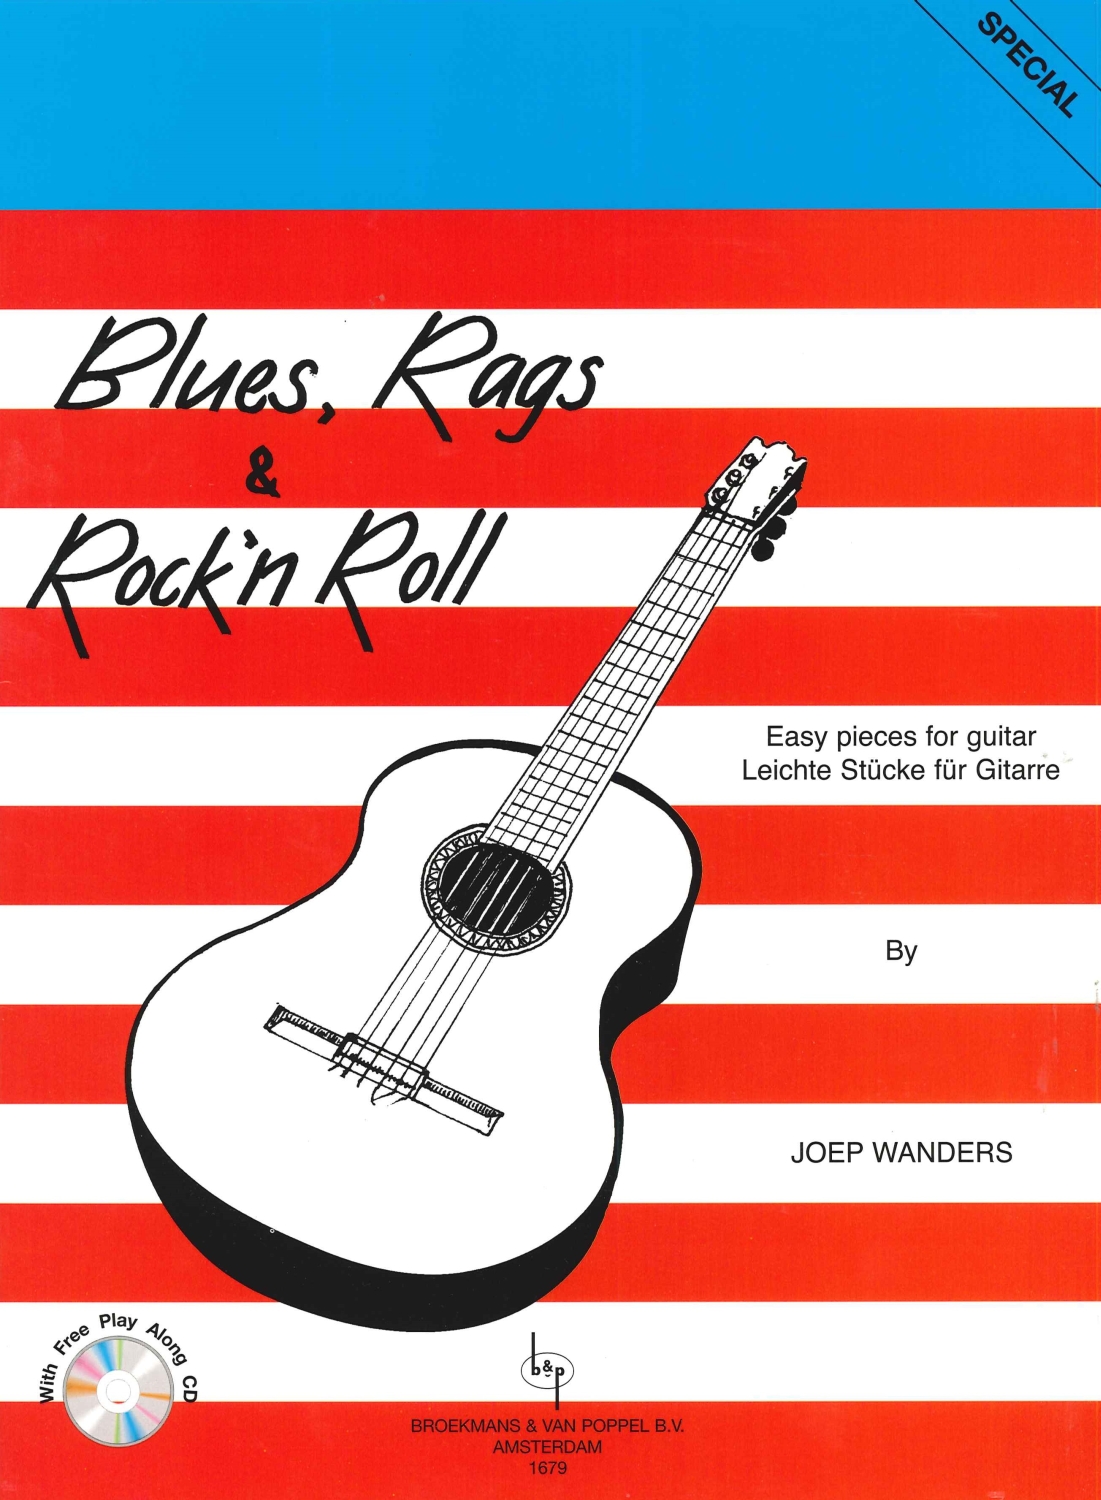 joep-wanders-blues-rags--rockn-roll-gtr-_notencd__0001.JPG